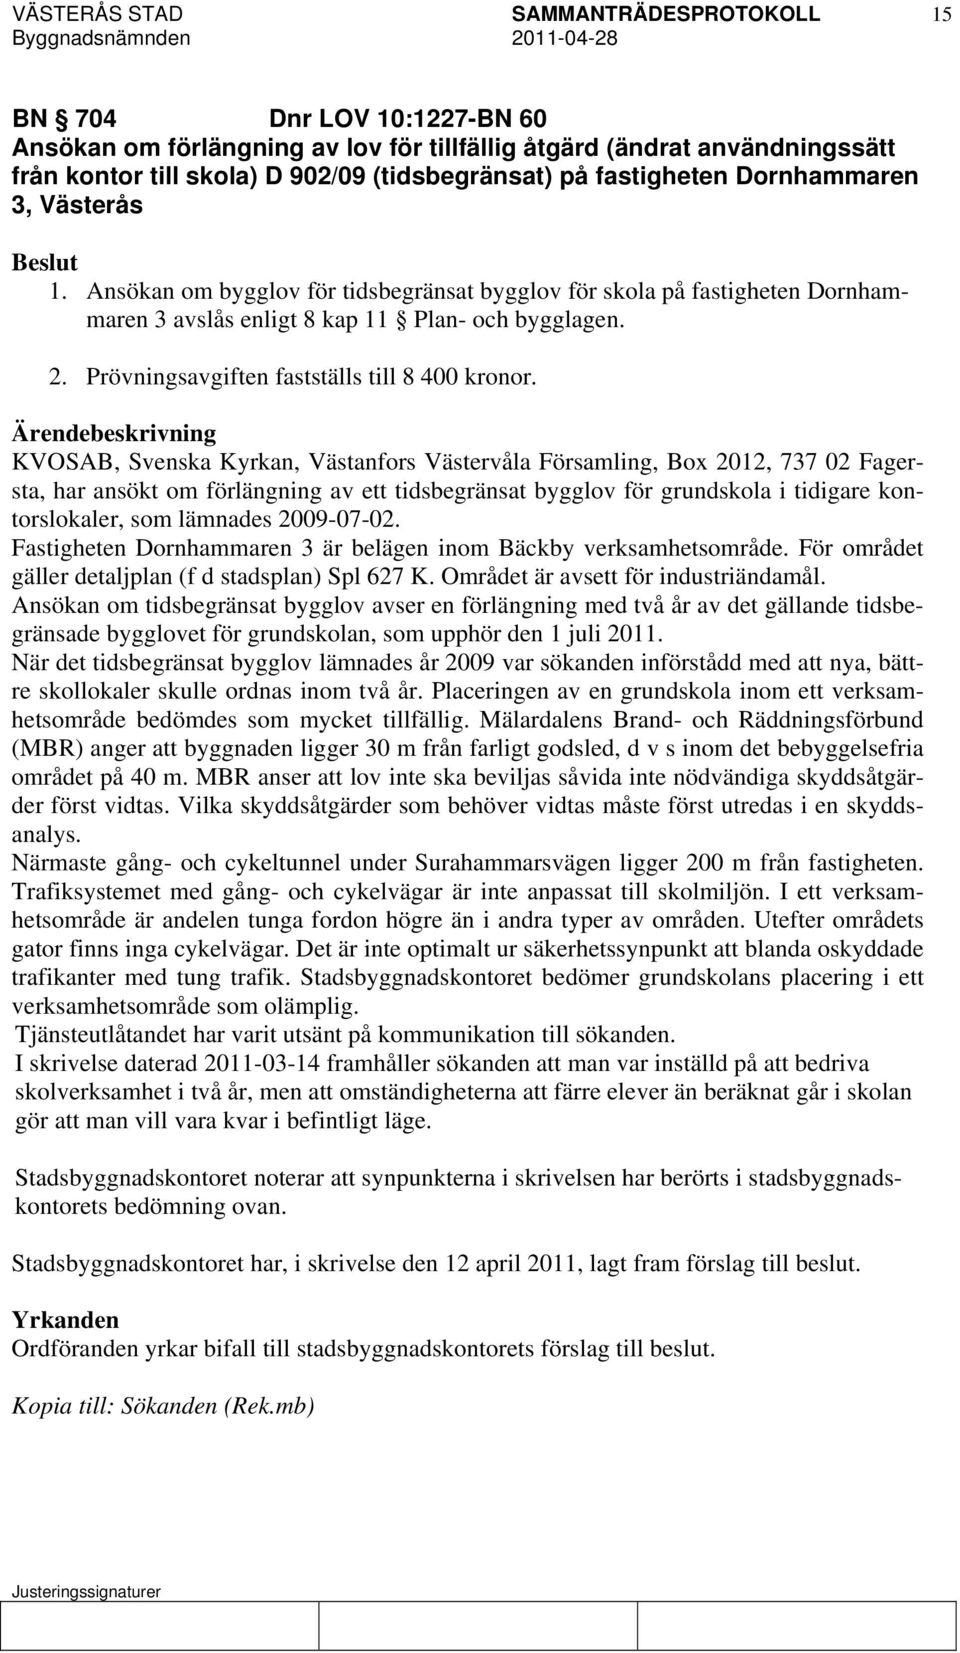 KVOSAB, Svenska Kyrkan, Västanfors Västervåla Församling, Box 2012, 737 02 Fagersta, har ansökt om förlängning av ett tidsbegränsat bygglov för grundskola i tidigare kontorslokaler, som lämnades